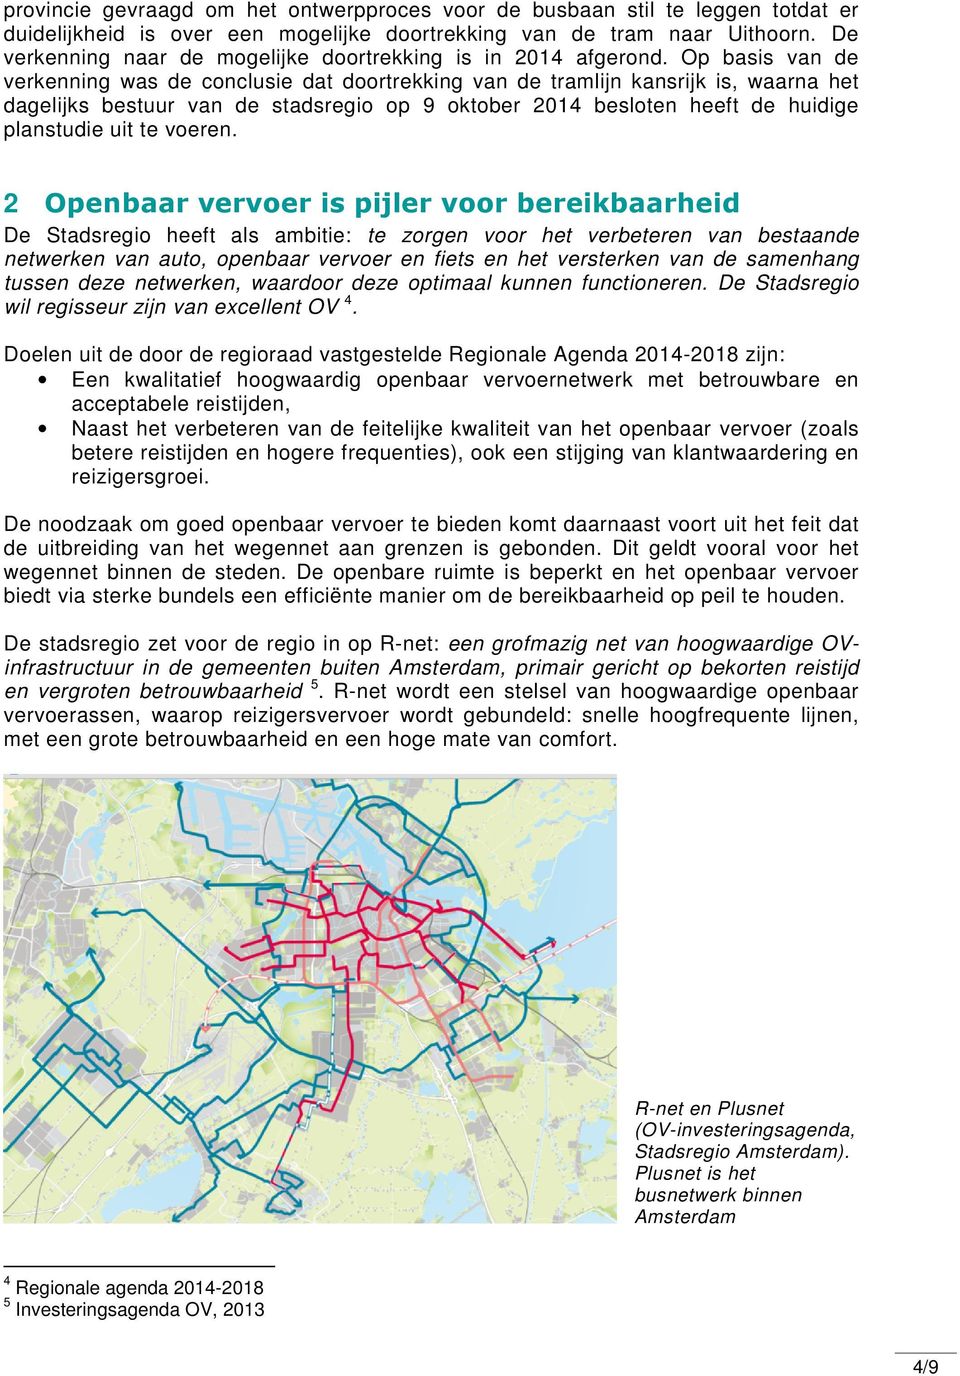 Op basis van de verkenning was de conclusie dat doortrekking van de tramlijn kansrijk is, waarna het dagelijks bestuur van de stadsregio op 9 oktober 2014 besloten heeft de huidige planstudie uit te